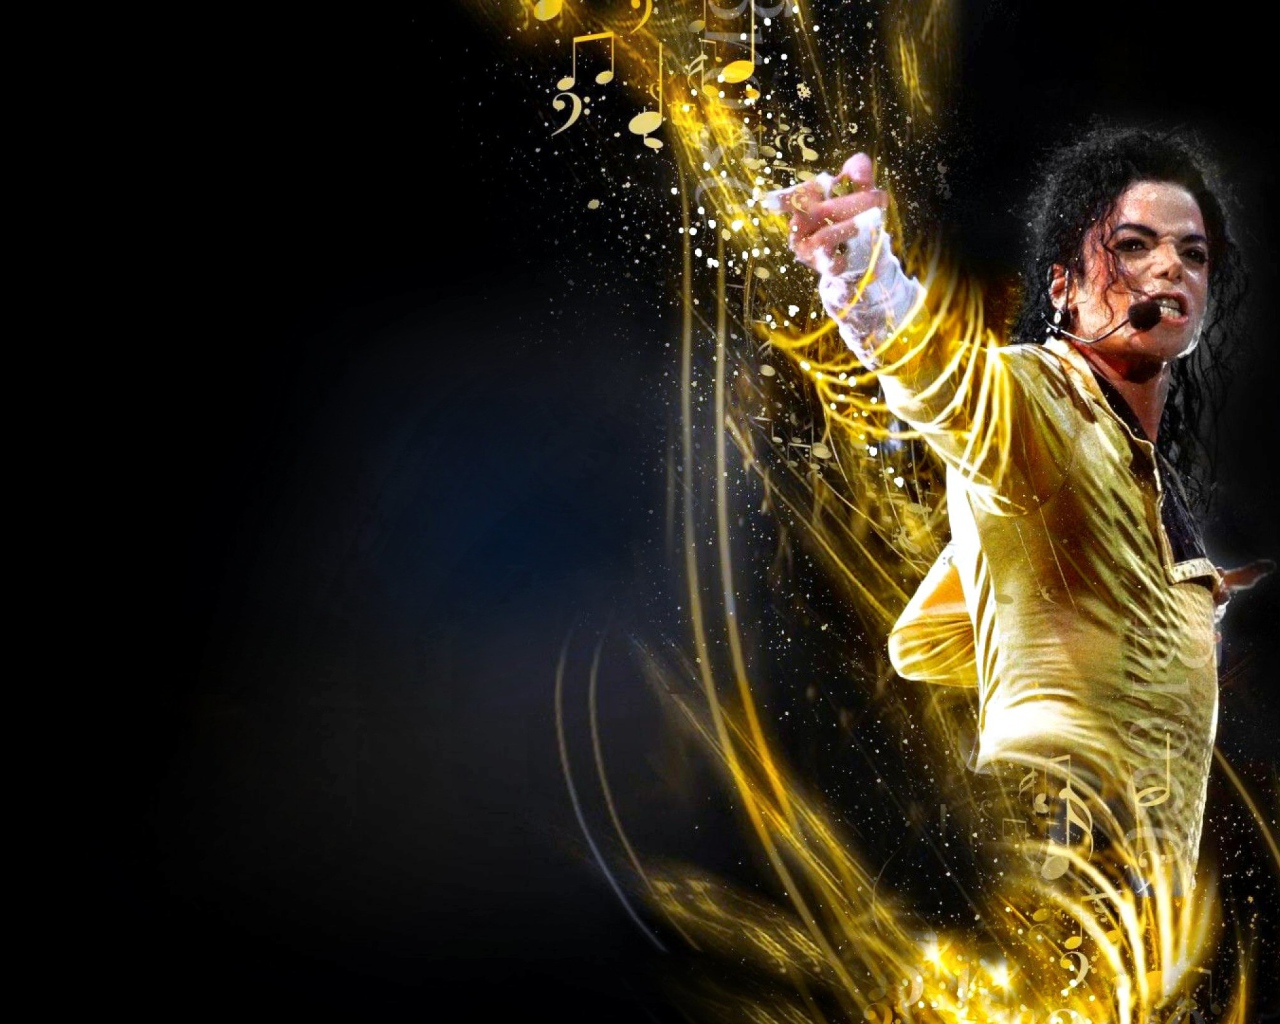 Легендарный певец Майкл Джексон